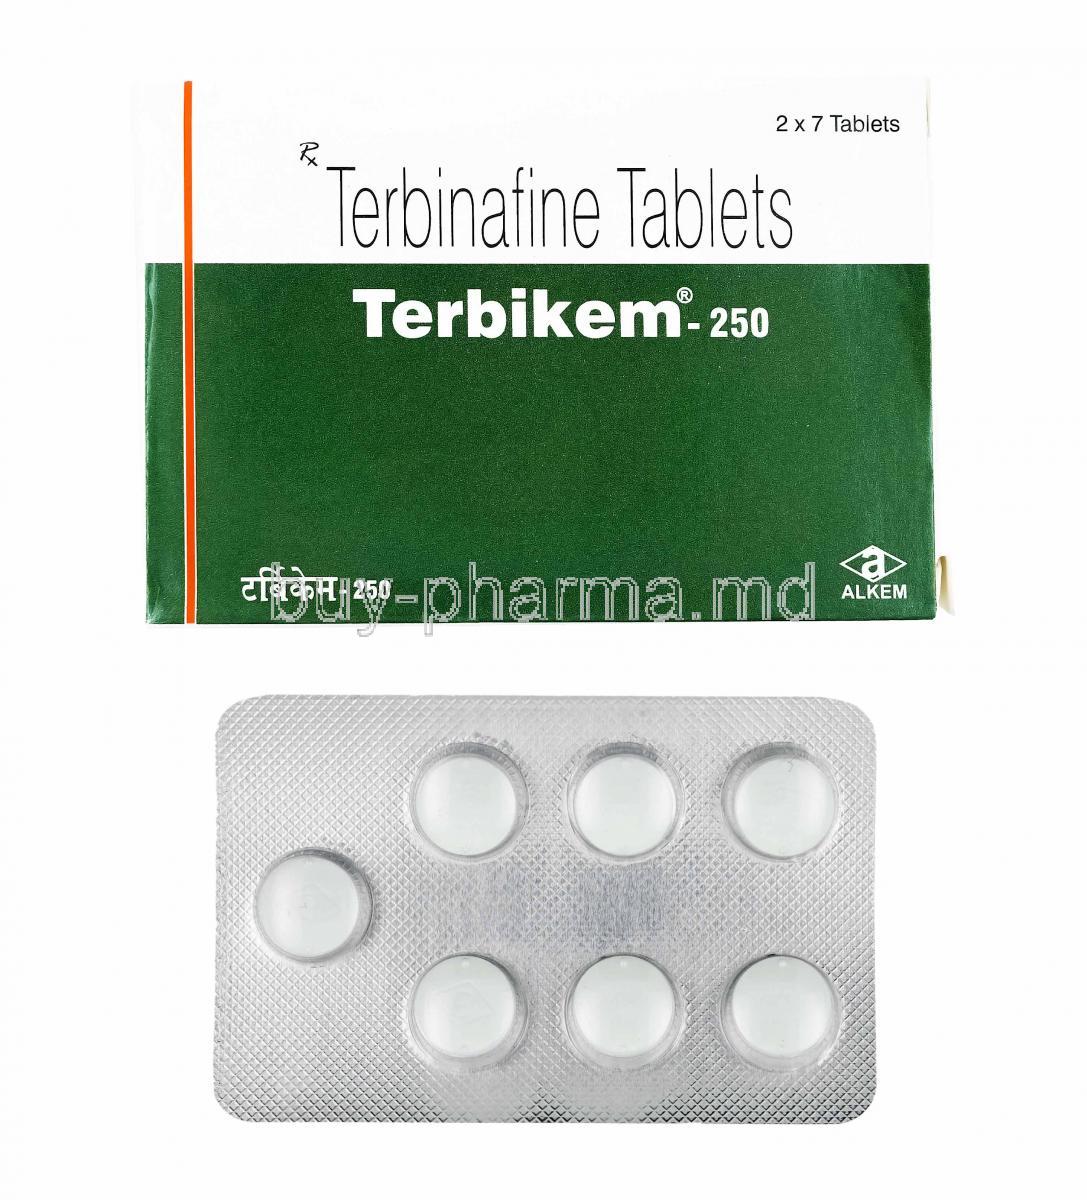 Terbikem, Terbinafine 250mg box and tablets